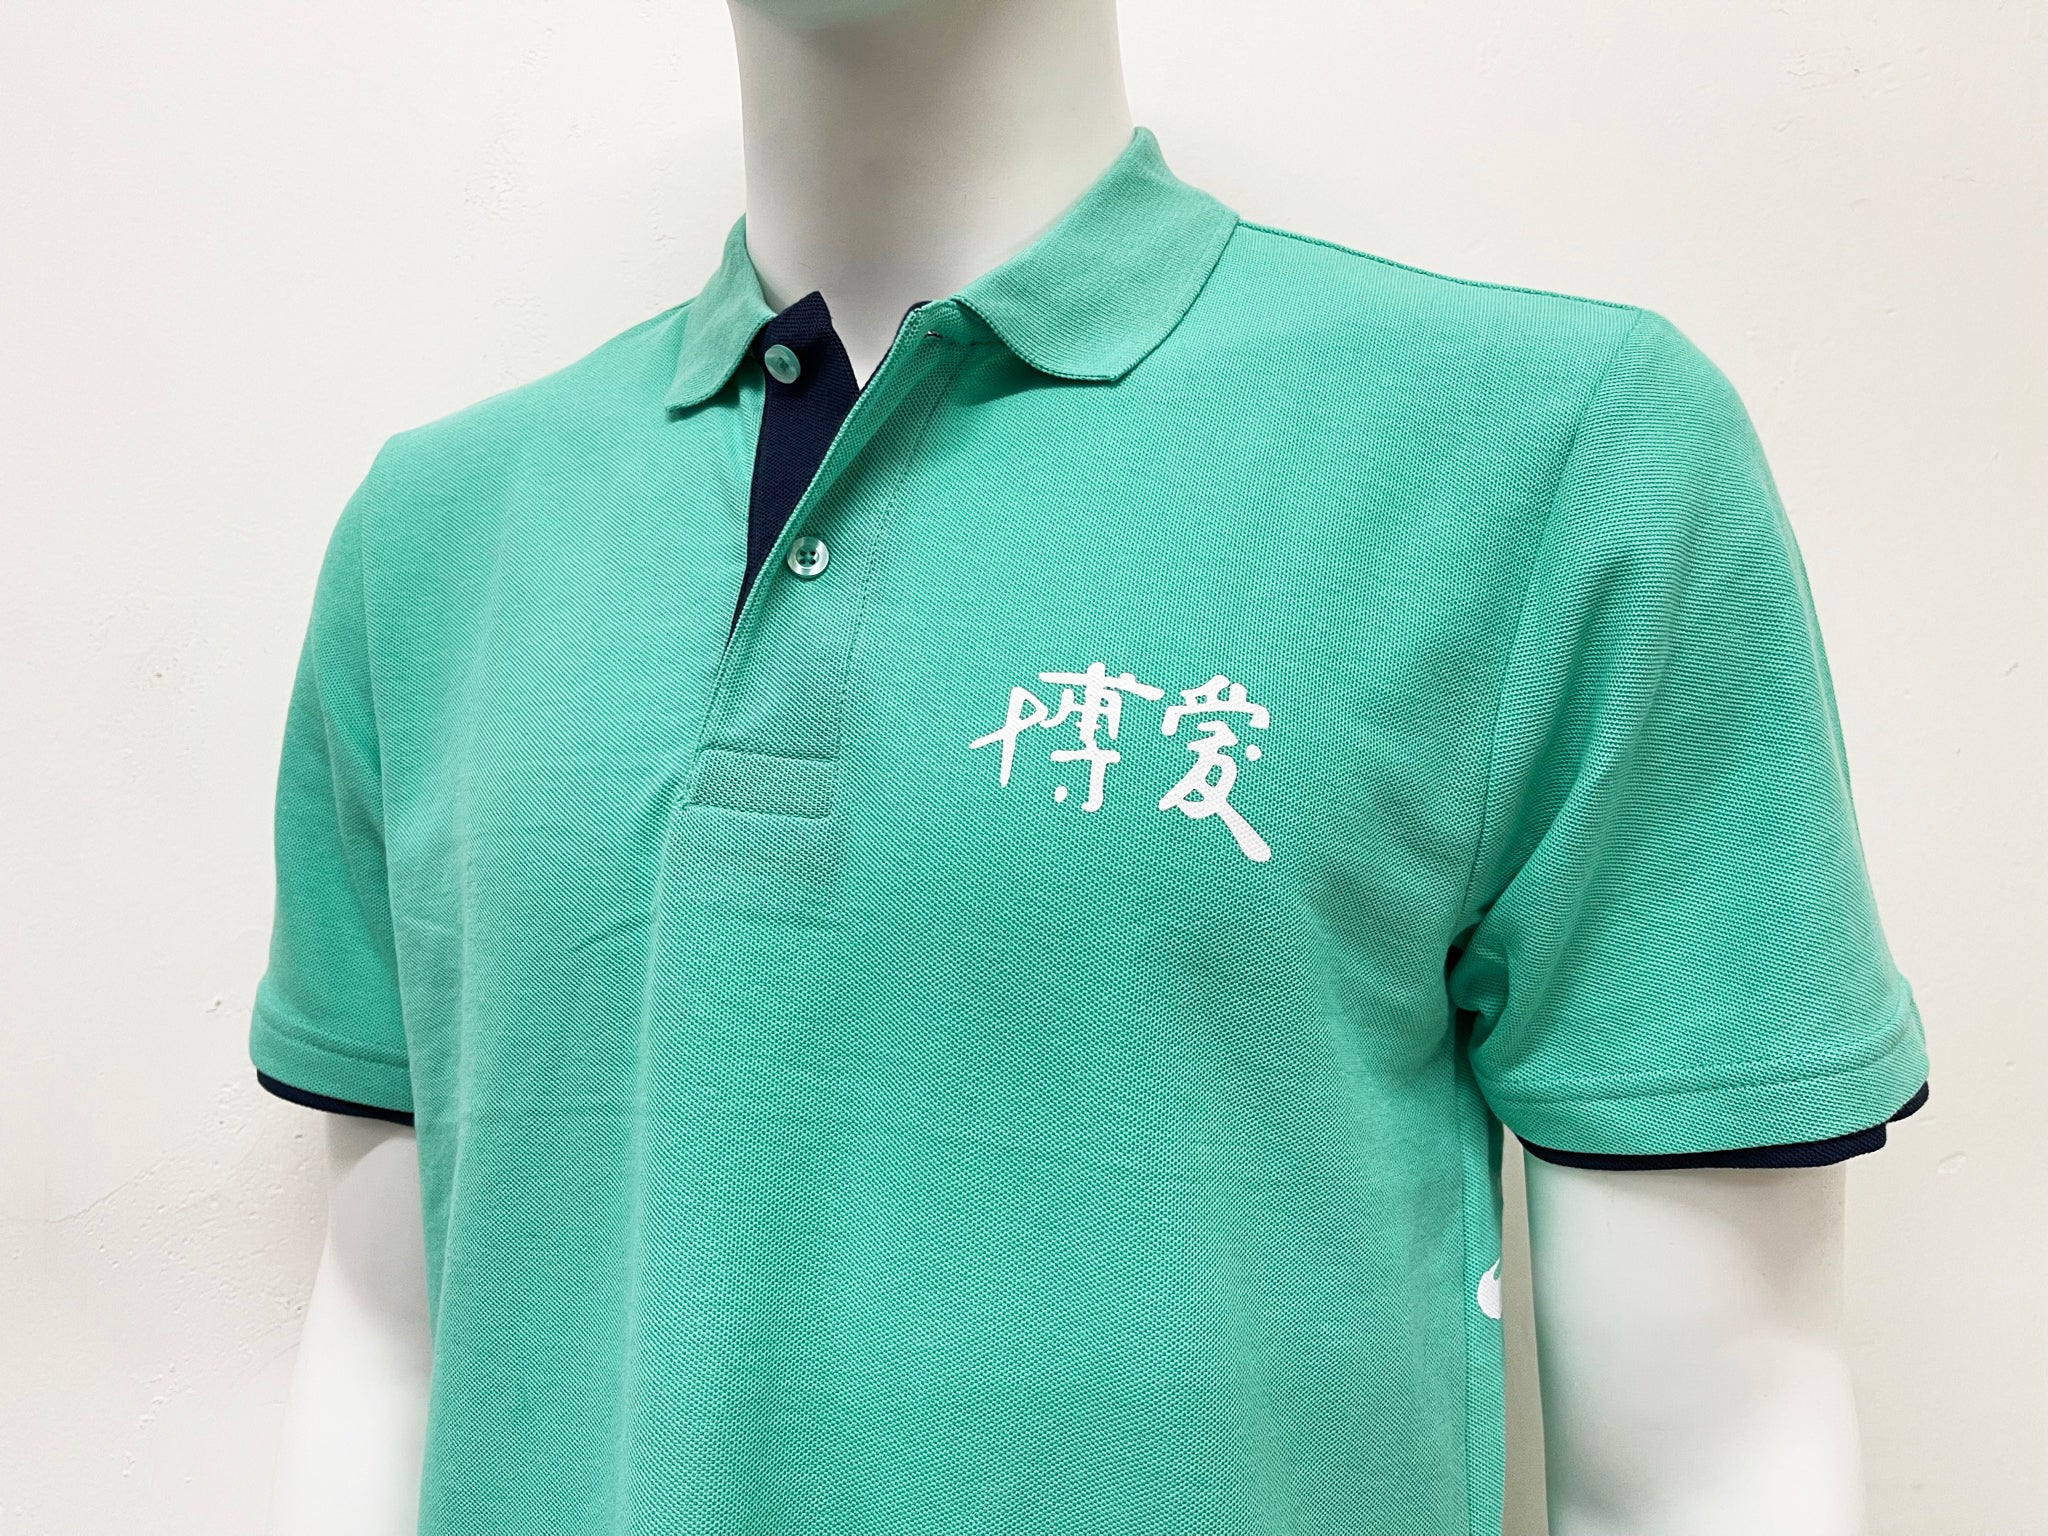 BP0006 - BLANK KING 195g CVC Adult Colour Matching Polo Shirt